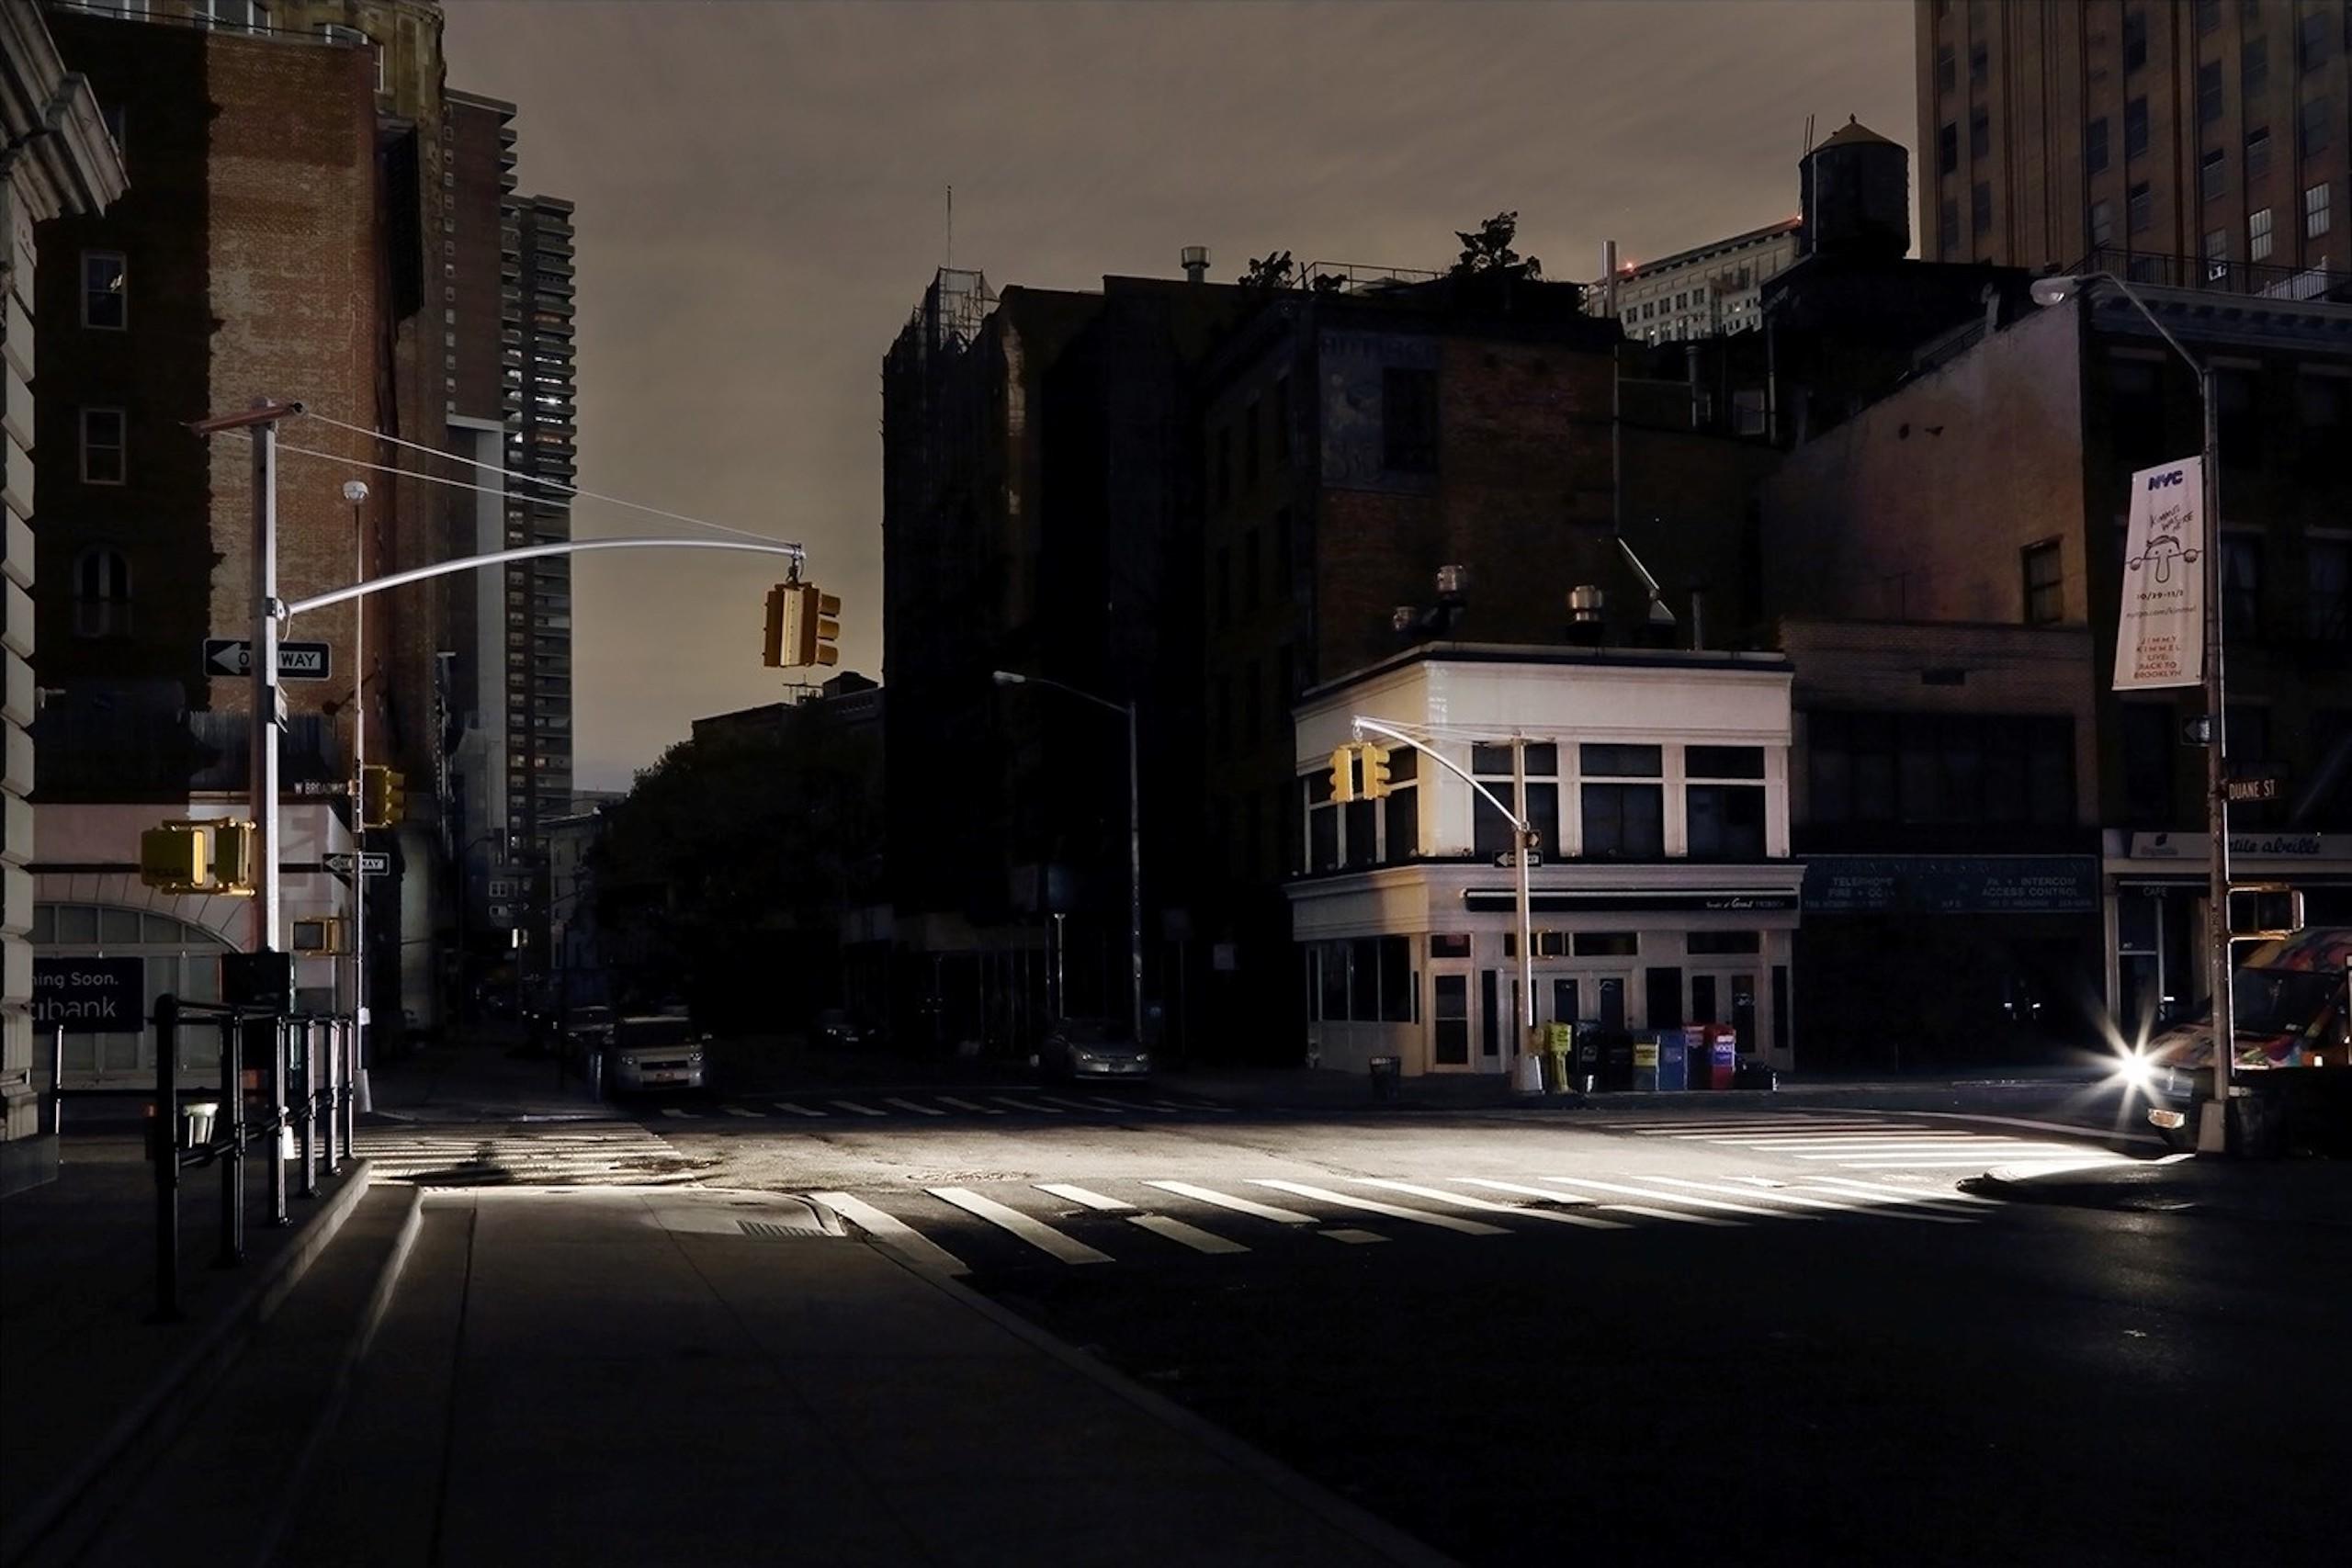 West Broadway ist eine limitierte Auflage der Fotografie des zeitgenössischen Künstlers Christophe Jacrot. Sie ist Teil der Reihe "New York in Schwarz".
 
Dieses Foto wird nur als ungerahmter Abzug verkauft. Sie ist in 2 Größen erhältlich:
*70 cm ×